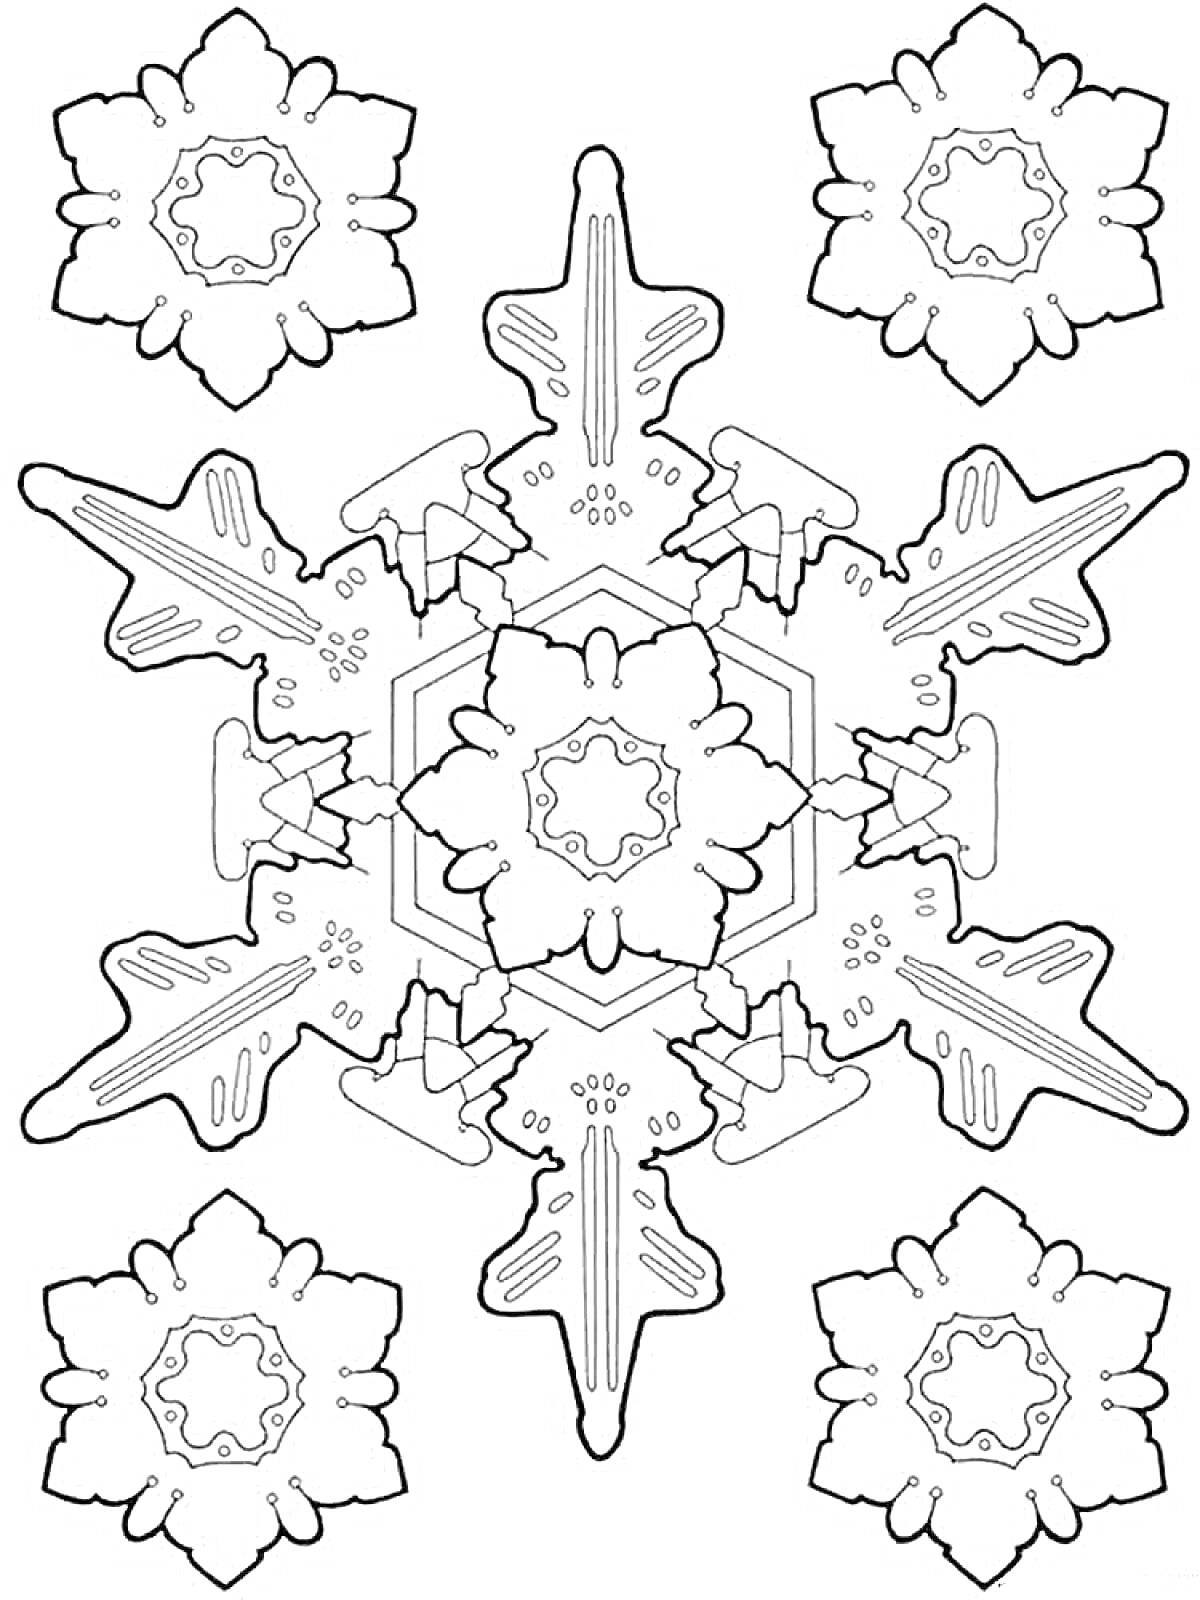 Раскраска Снежинка с шестью крупными лучами и малыми снежинками на концах